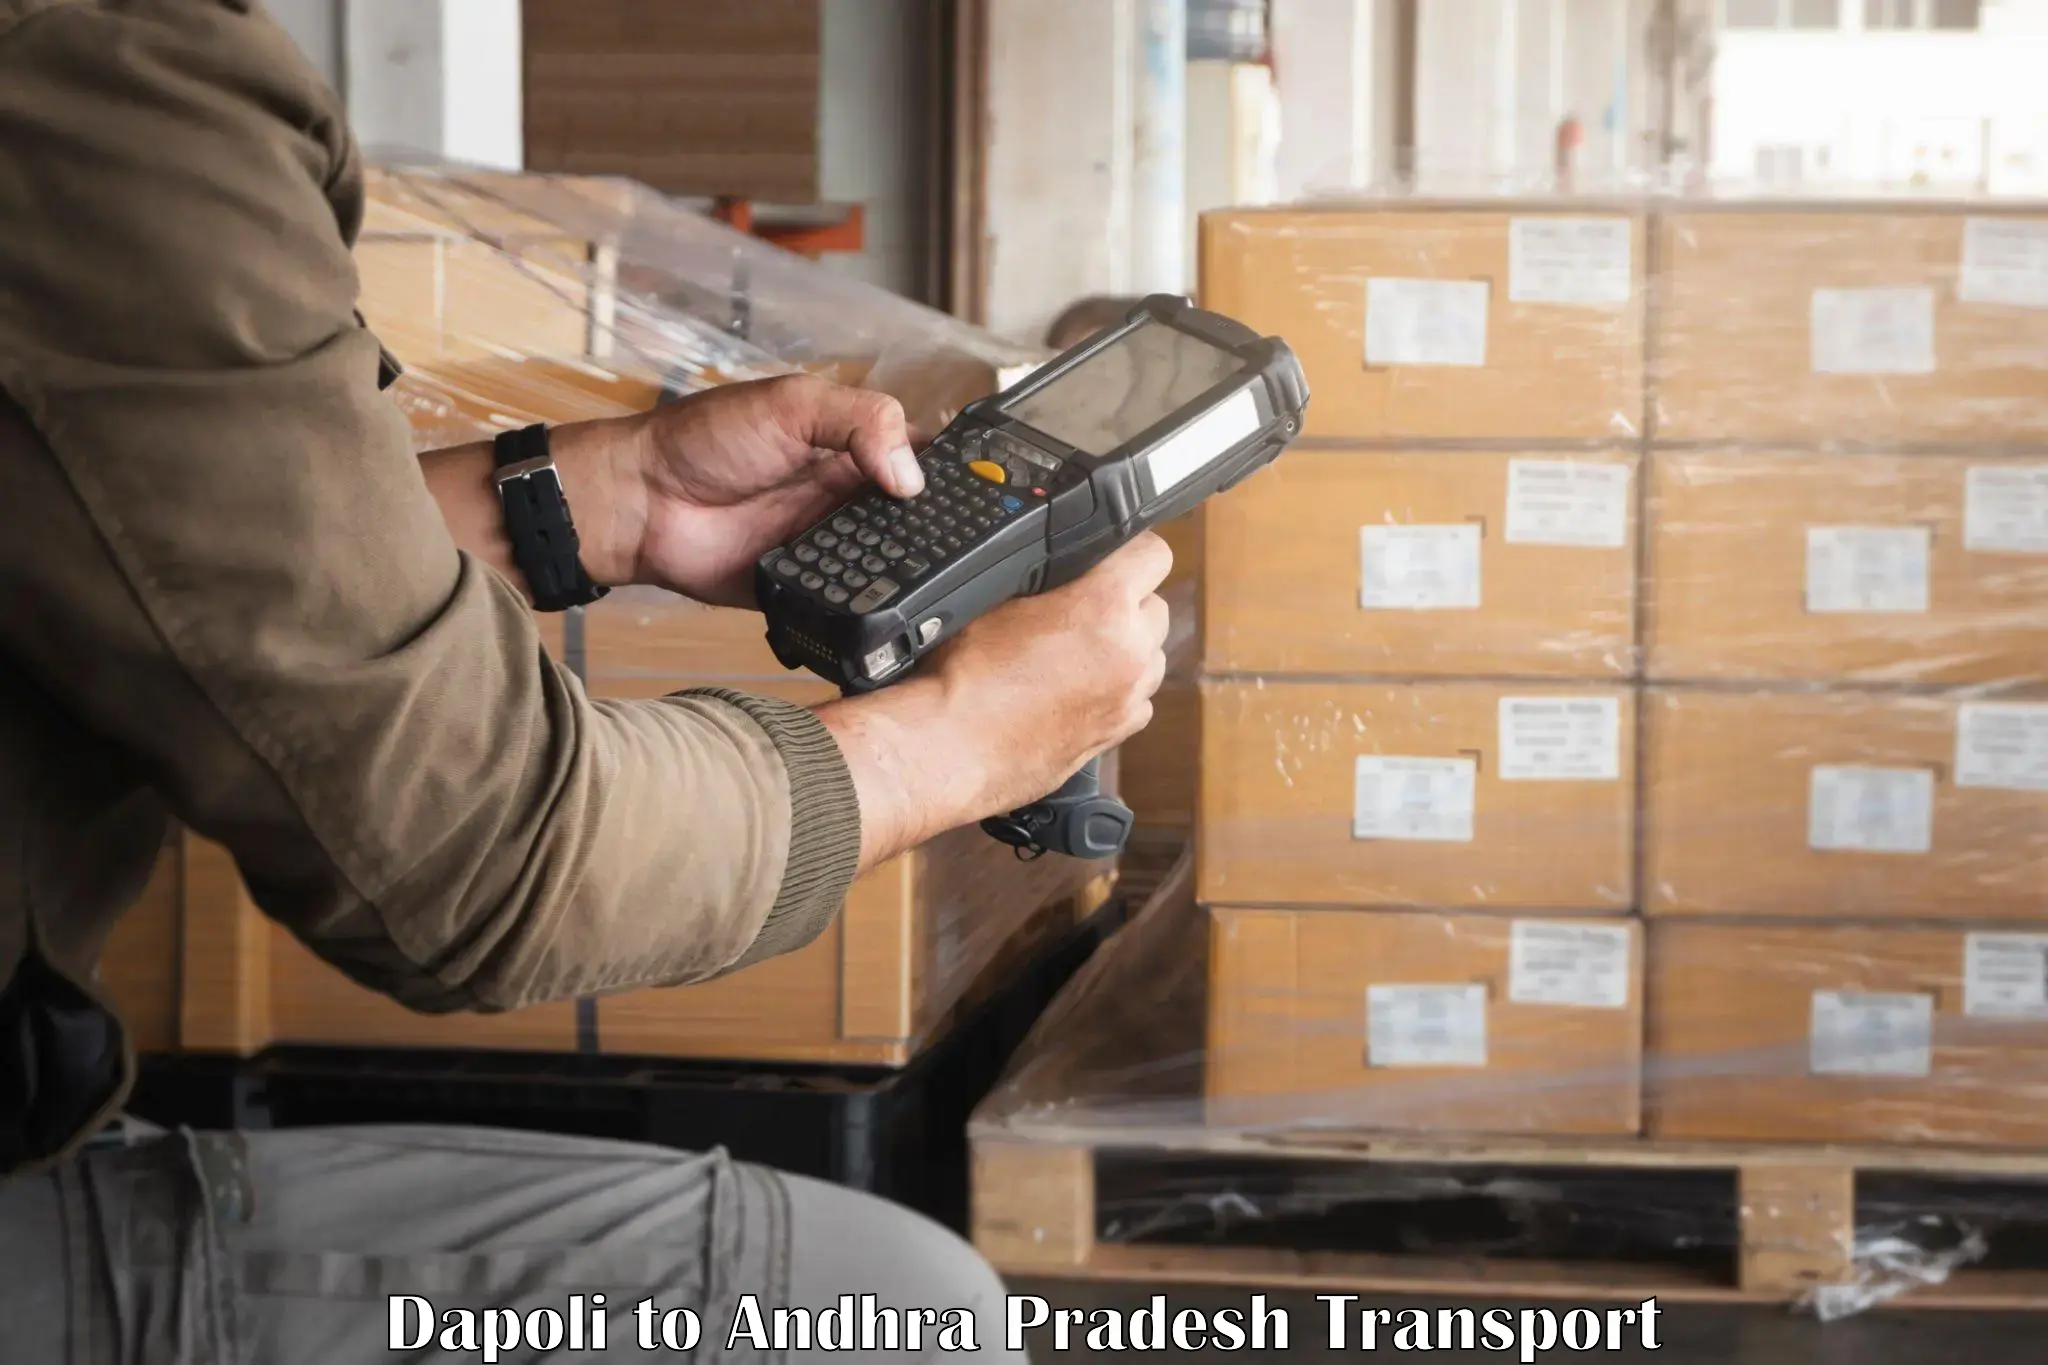 Shipping partner Dapoli to Nellore